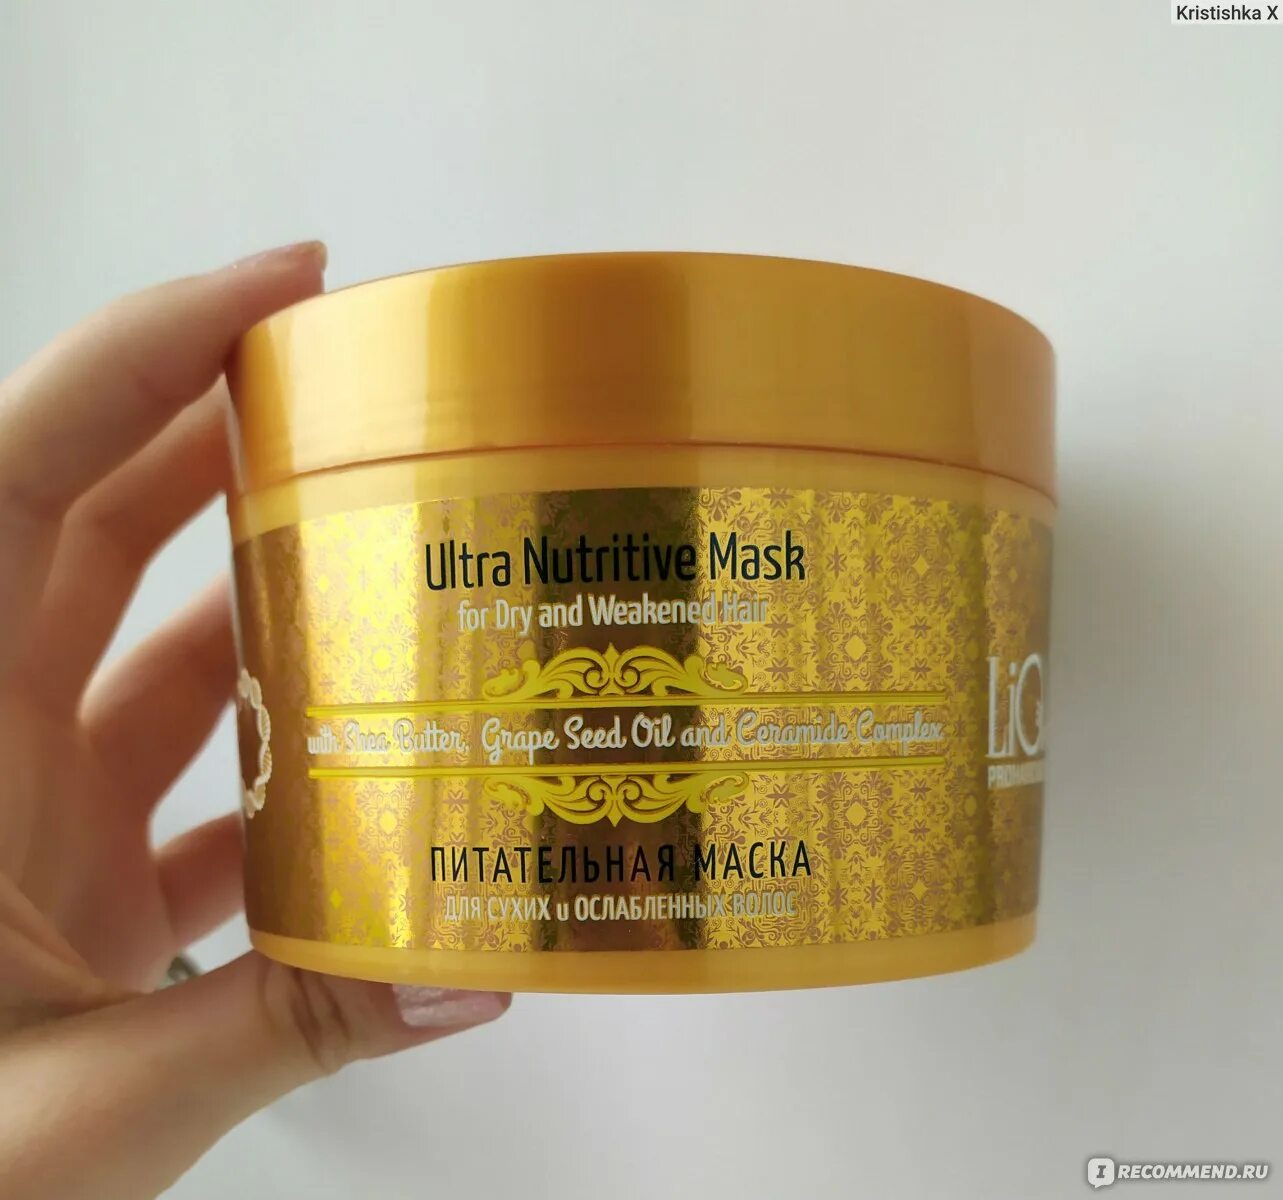 Маска Ultra Nutritive Mask. Питательная маска для волос Ultra Nutritive. Ультра Нутритив маска для волос. Золотая маска для волос. Питательная маска для волос отзывы